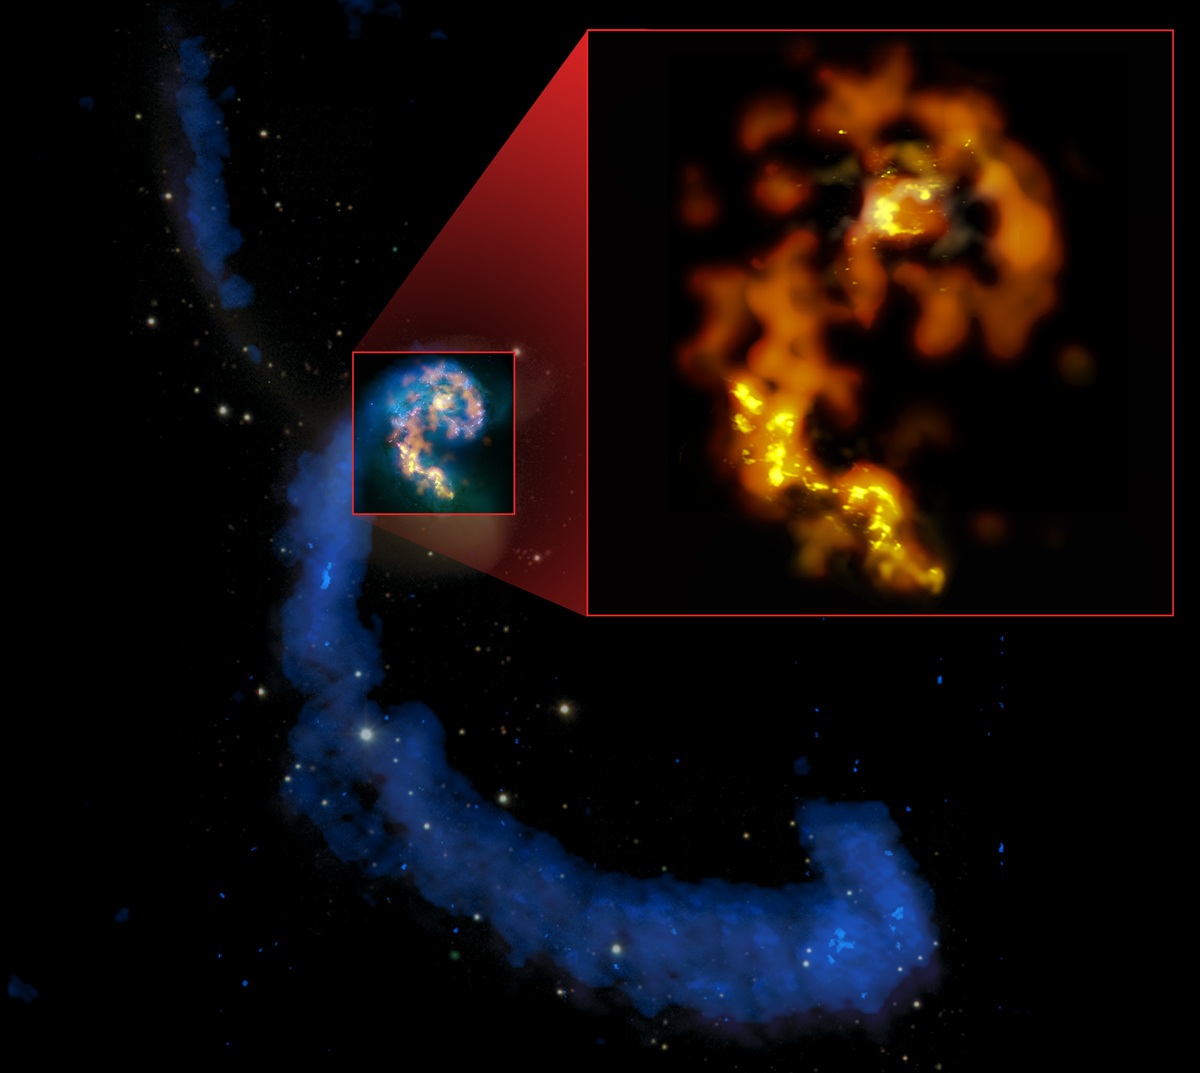 magen compuesta en múltiples longitudes de onda, de las galaxias en interacción NGC 4038/4039, las Antenas, donde se aprecia sus colas en longitudes de onda de radio (azules), las formaciones de estrellas pasadas y recientes en luz visible (blancos y rosados), y una selección de regiones de estrellas actualmente en formación en longitudes milimétricas y submilimétricas (naranjos y amarillos). En detalle: primeras observaciones milimétricas y submilimétricas de ALMA en las bandas 3 (naranjo), 6 (ámbar) y 7 (amarillo), con un nivel de detalle que sobrepasa todas las otras imágenes de estas longitudes de onda. Créditos: (NRAO/AUI/NSF); ALMA (ESO/NAOJ/NRAO); HST (NASA, ESA y B. Whitmore [STScI]); J. Hibbard (NRAO/AUI/NSF); y NOAO/AURA/NSF.